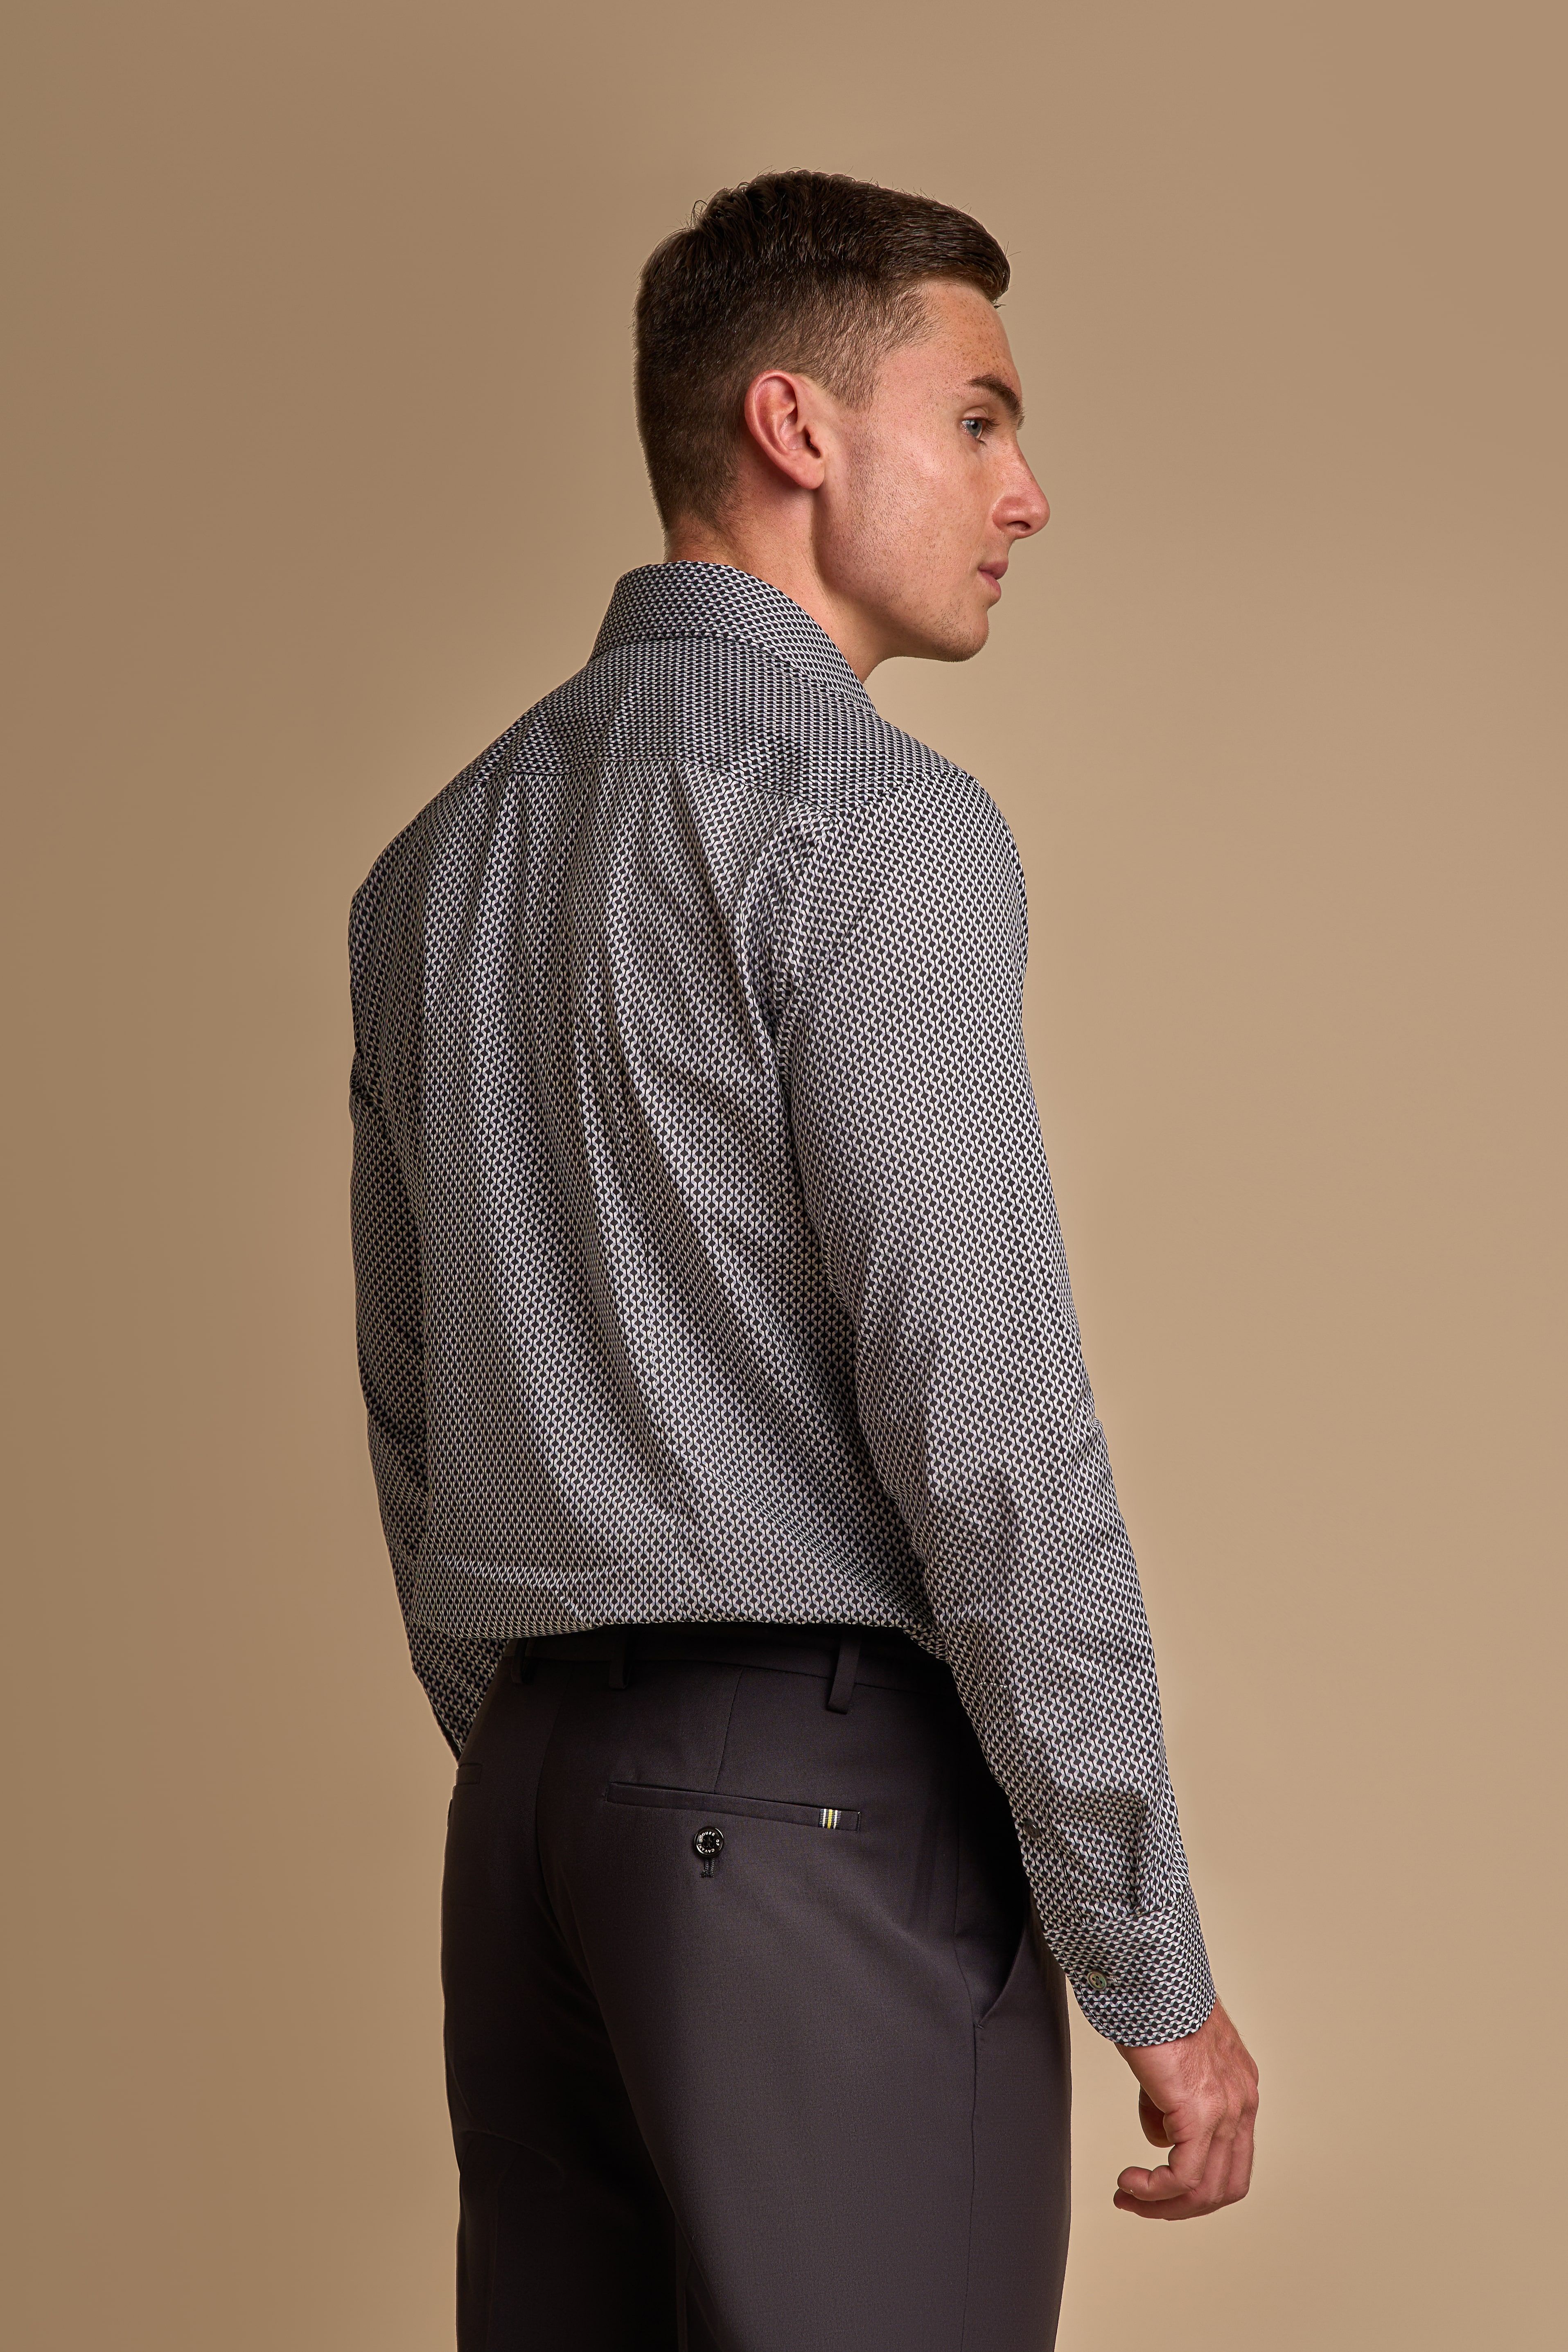 Halbformelles, langärmliges, gemustertes Baumwollhemd für Herren in Schwarz und Weiß mit schmaler Passform